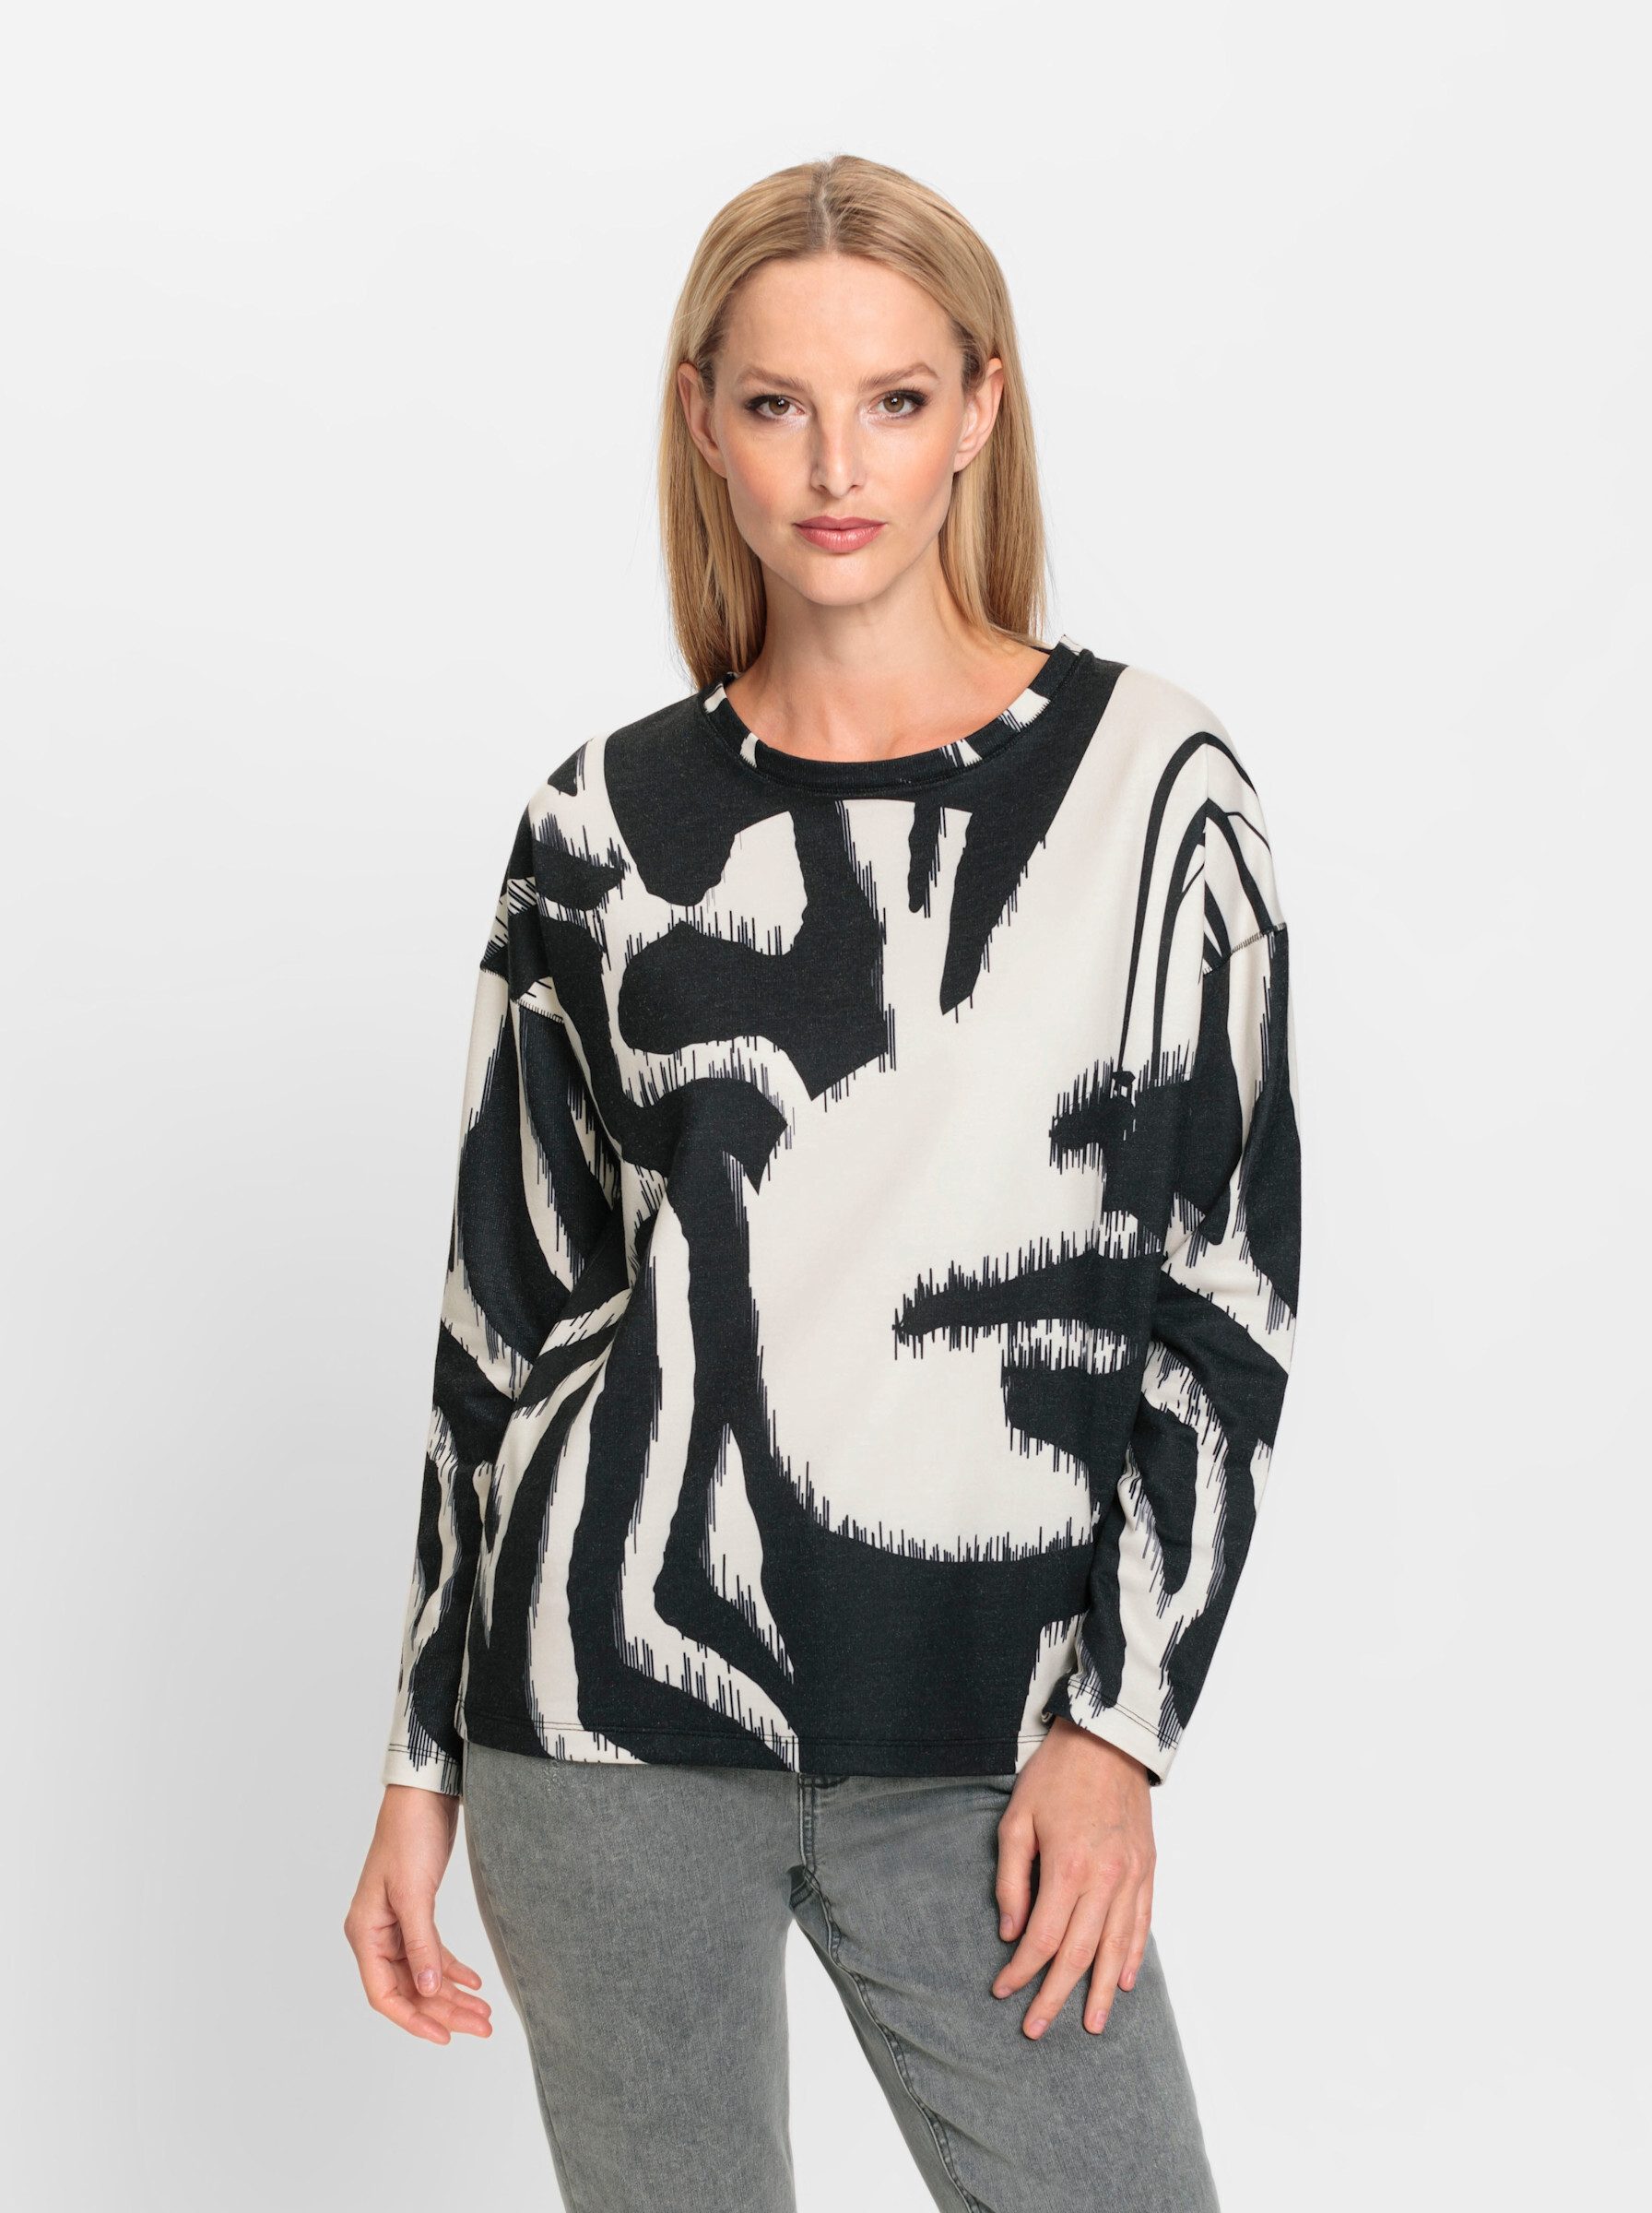 heine Sweater Sweatshirt